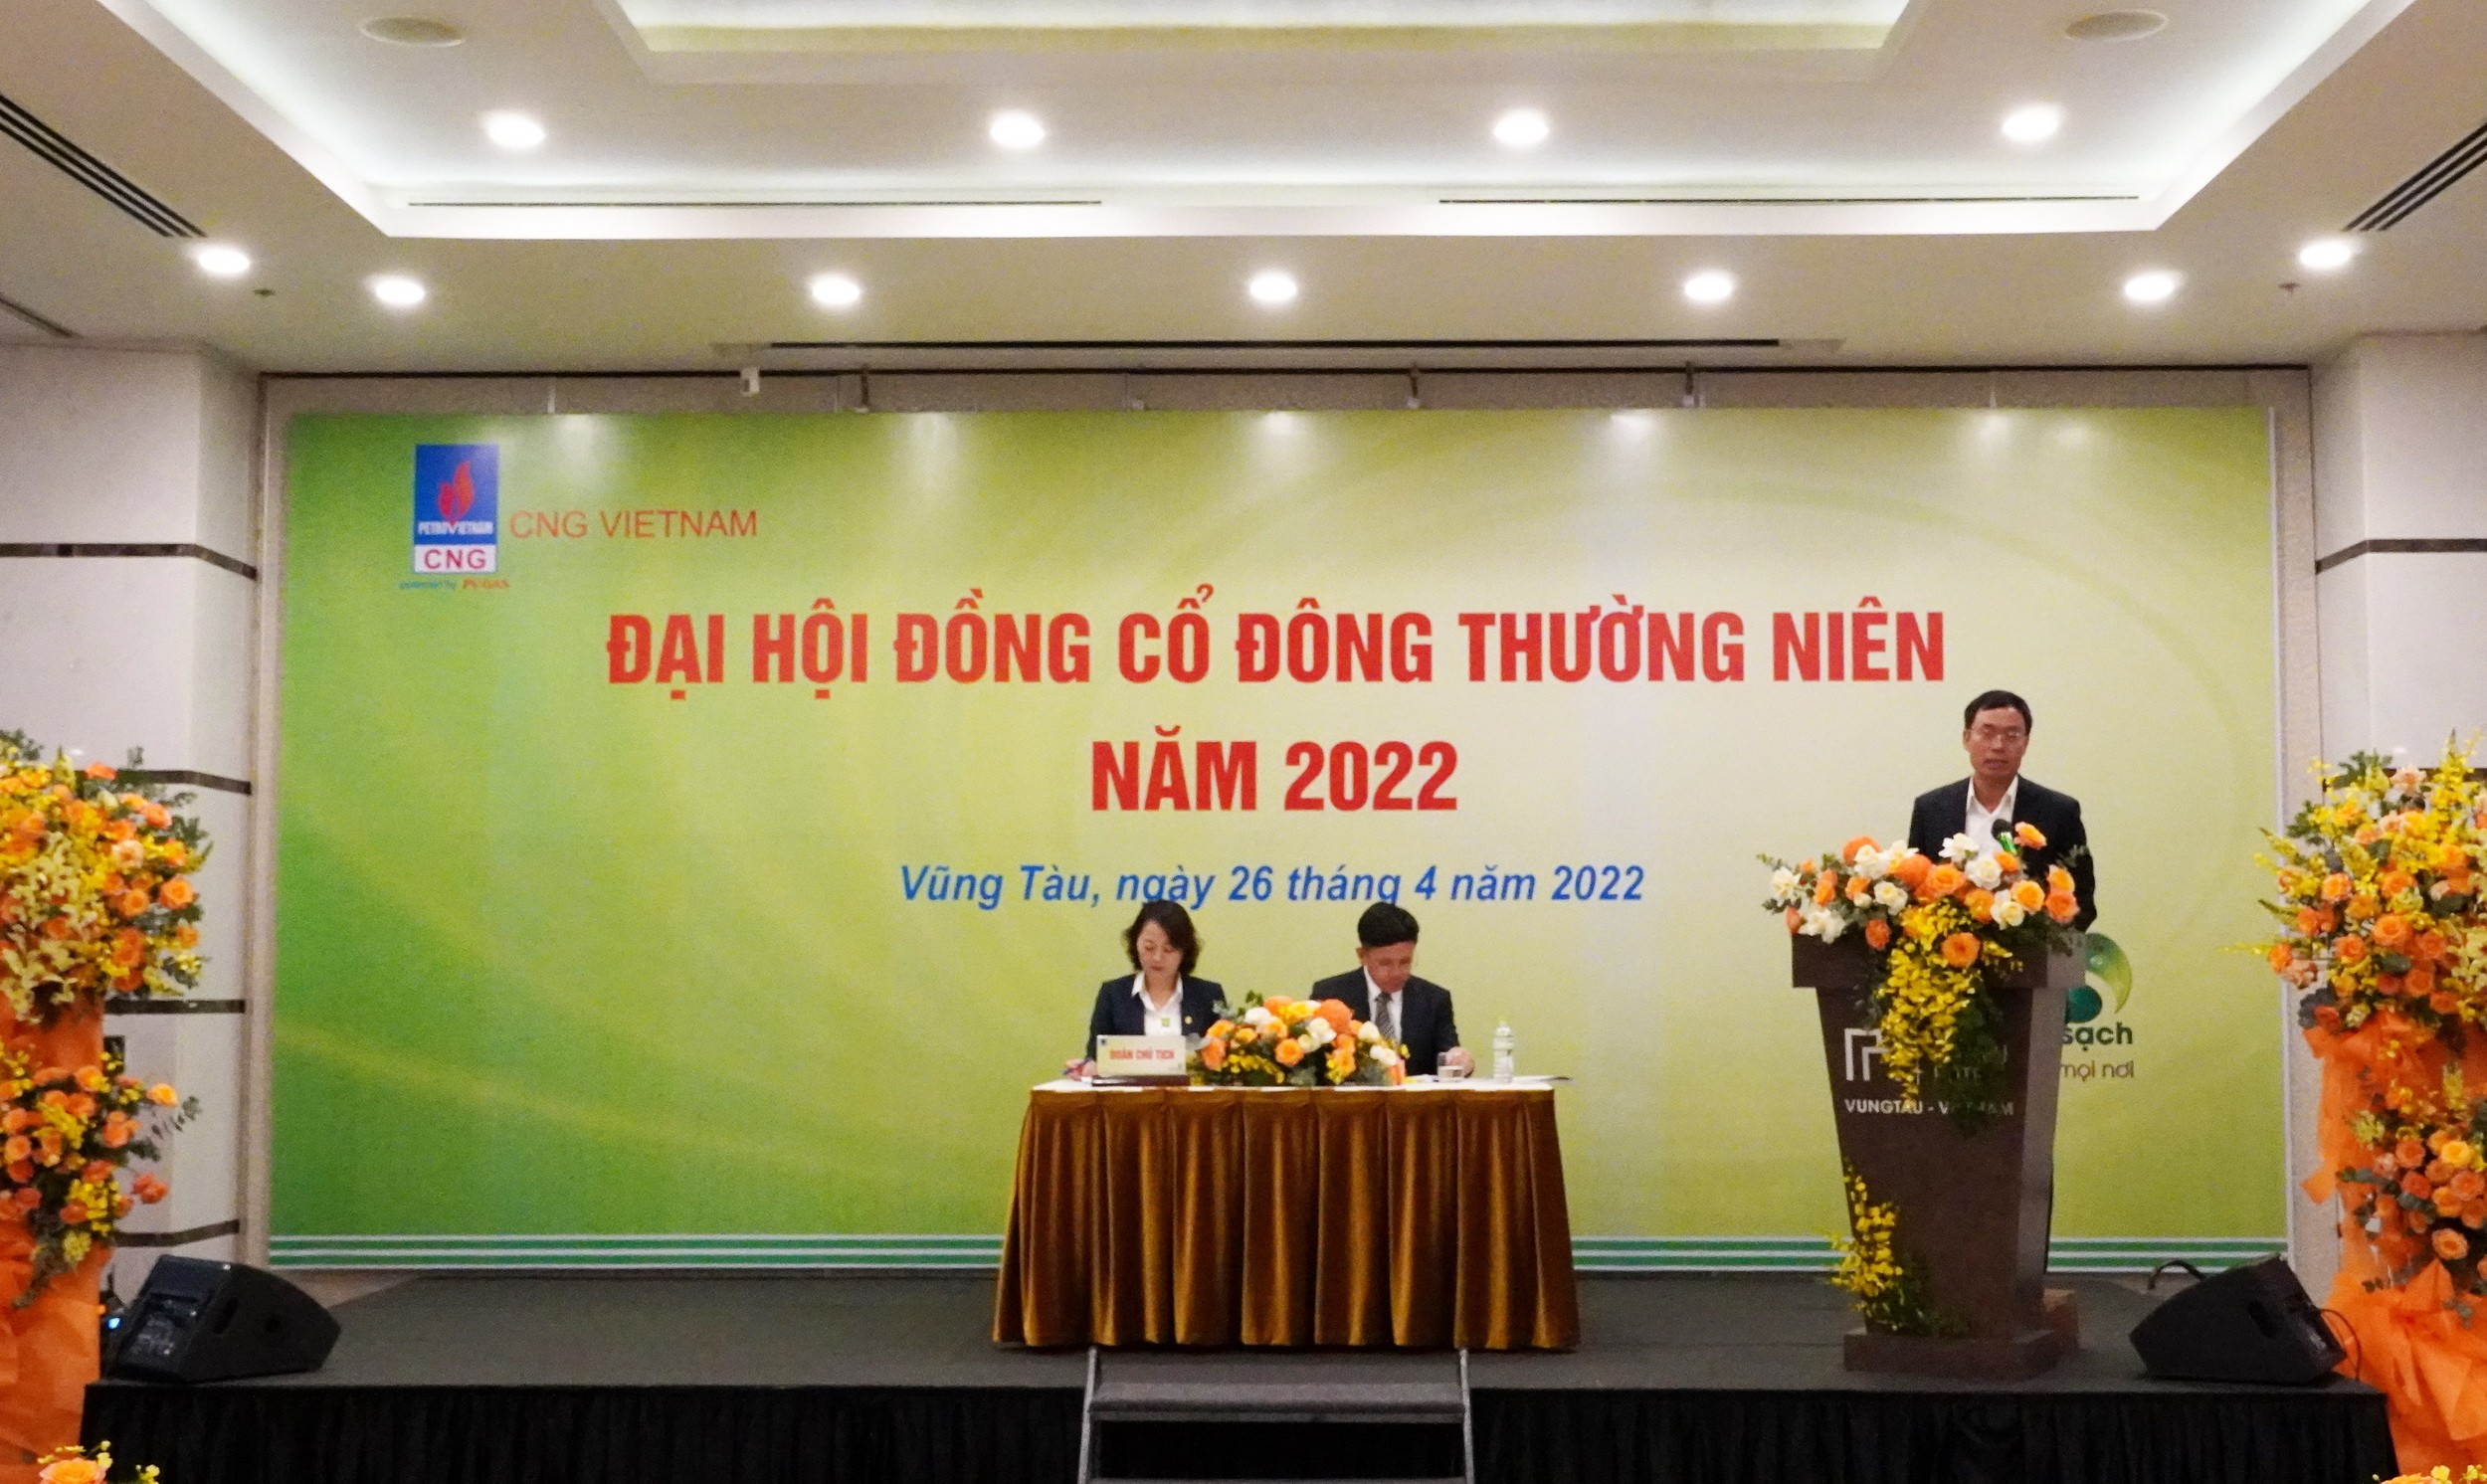 Tầm nhìn mới của CNG Việt Nam trong hoạt động sản xuất, kinh doanh